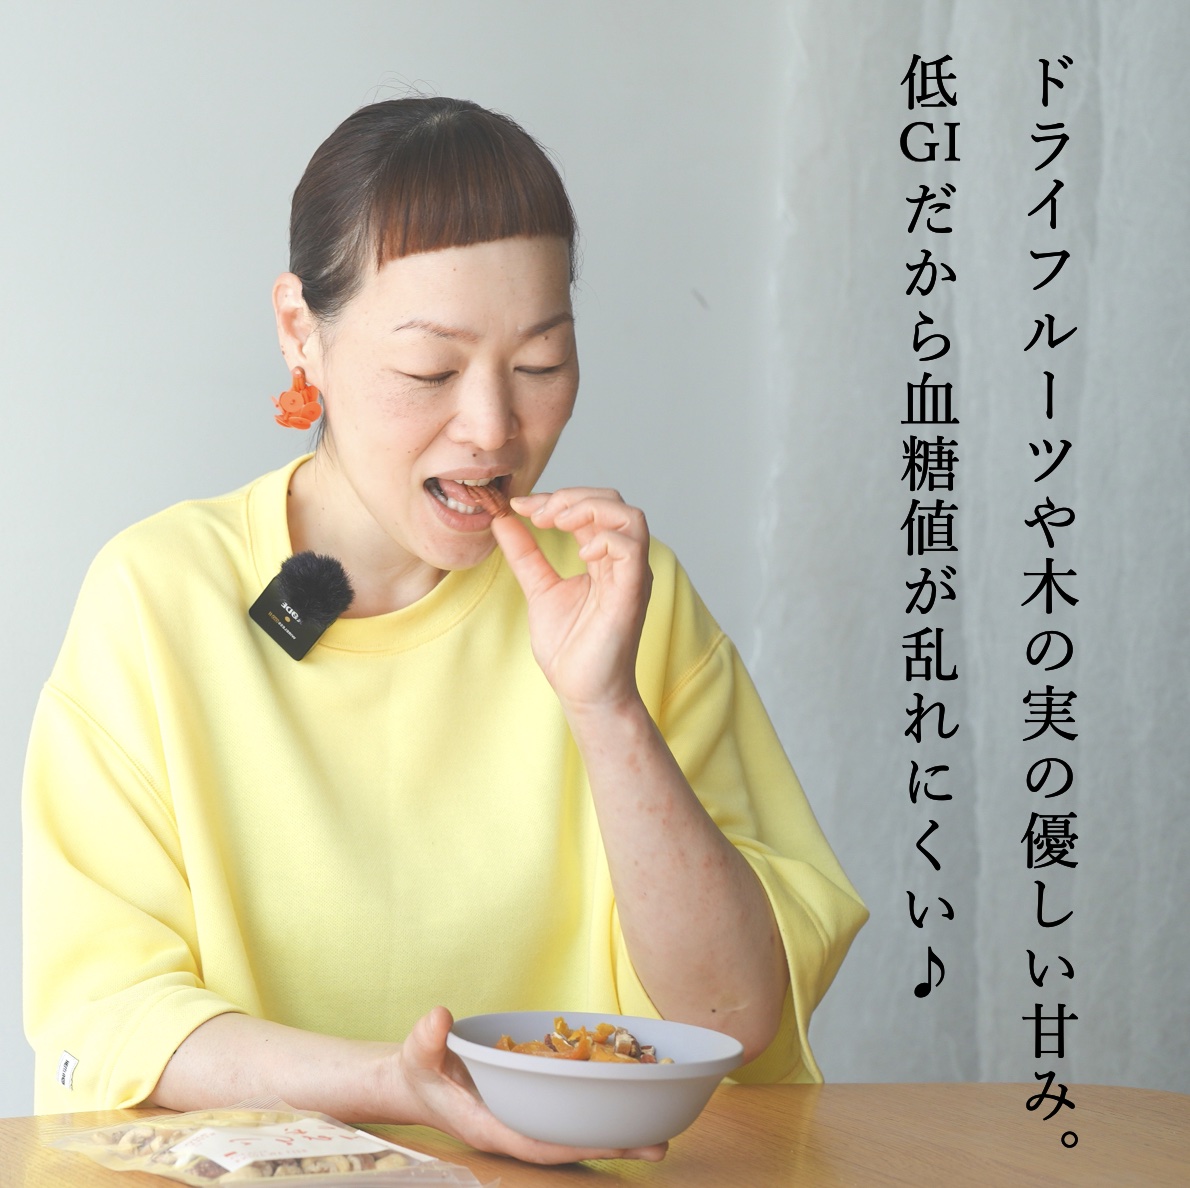 更年期専門店オアディスワンのヘム鉄ナッツ「へむてっつ」を食べる女性のイメージ